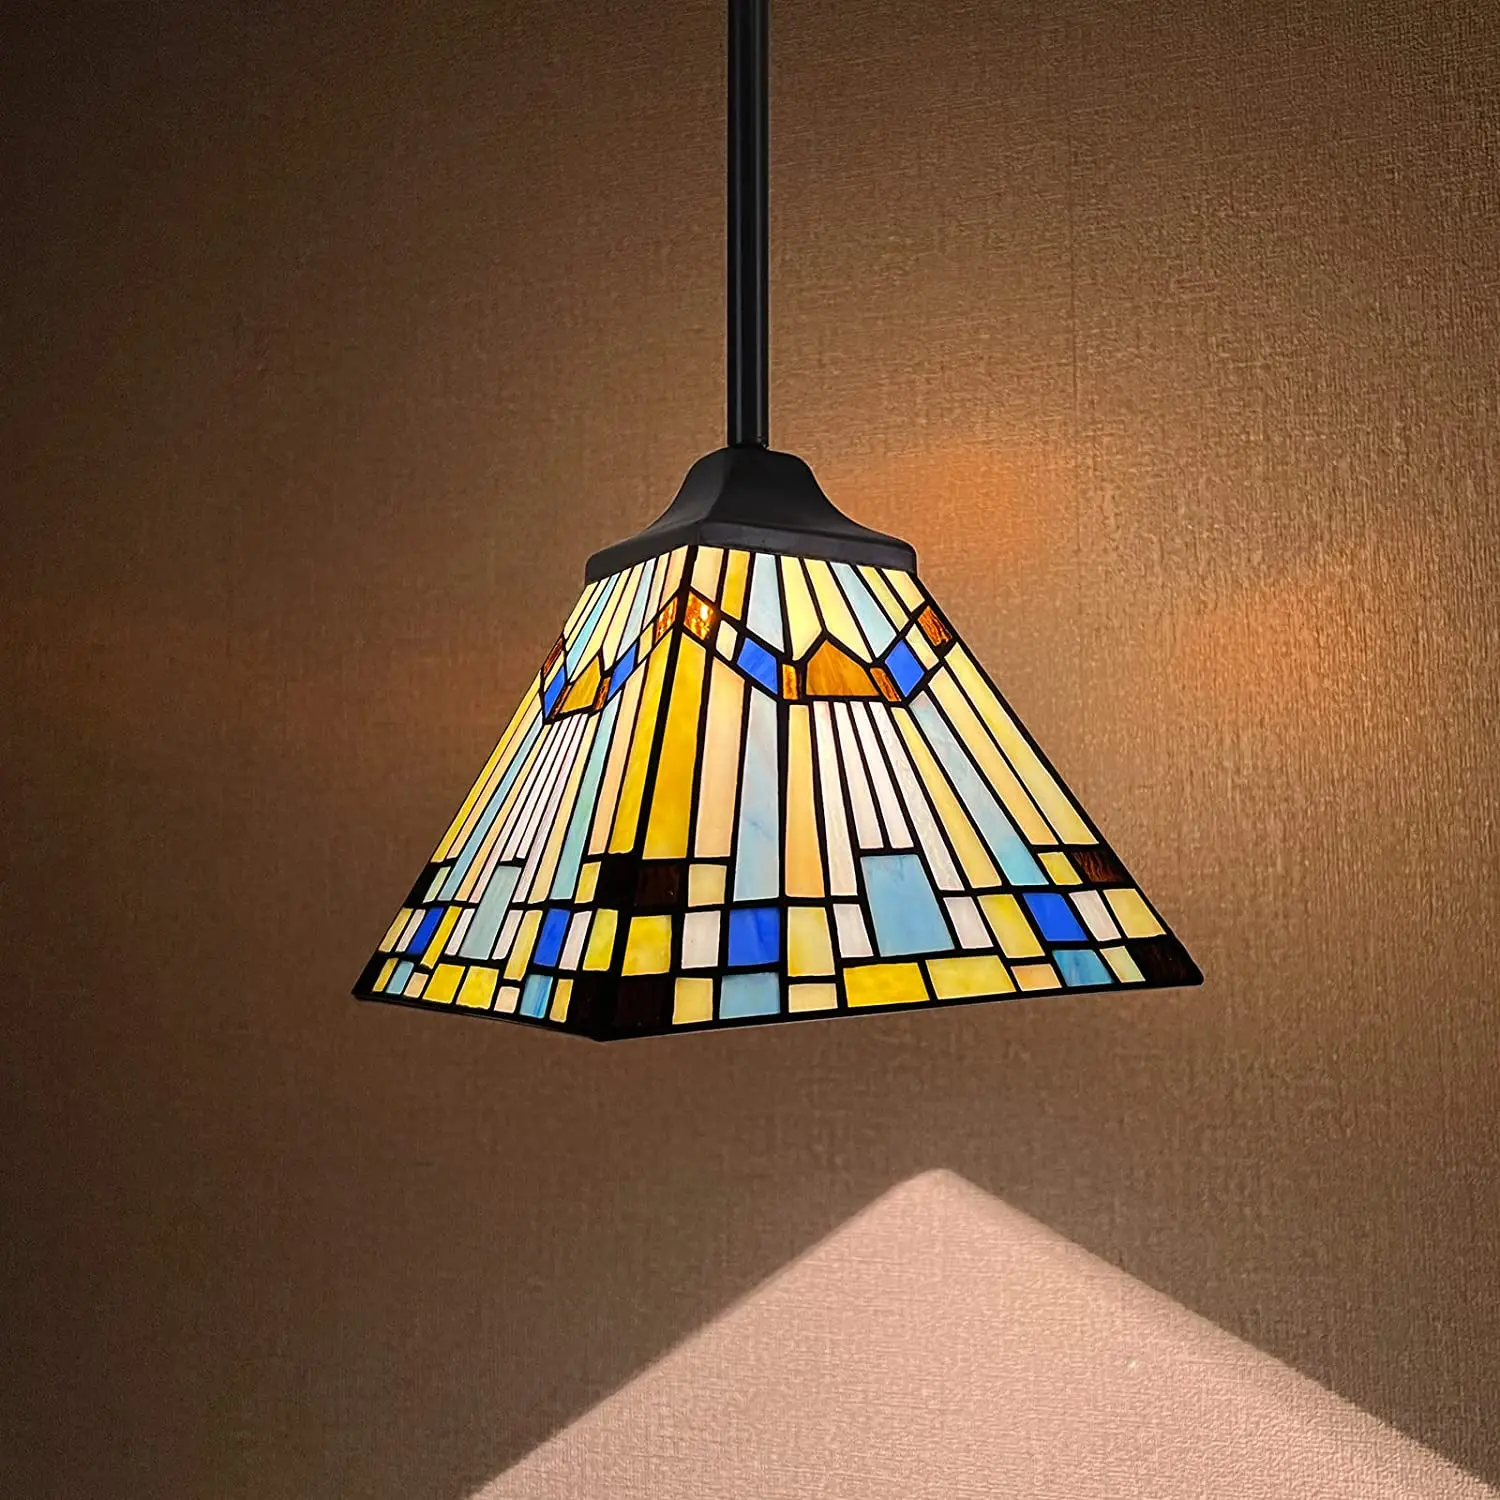 

Подвесная лампа Тиффани из искусственного стекла, стильная Подвесная лампа 8 дюймов в широком зеленом и синем цвете для кухонного островка, столовой, бара, коридора